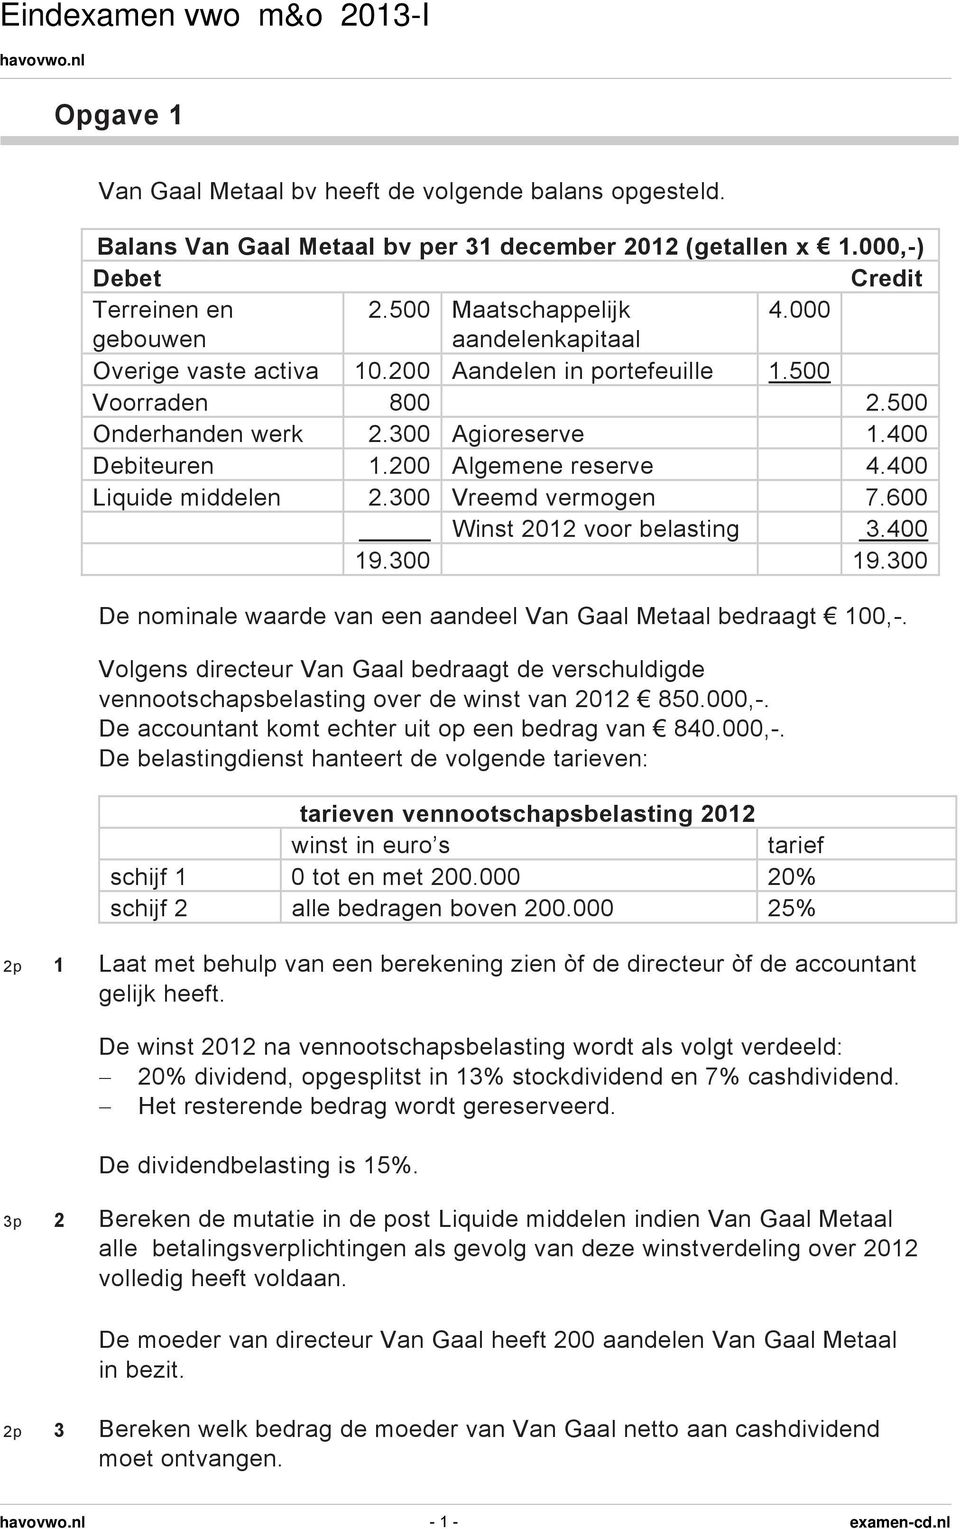 400 Liquide middelen 2.300 Vreemd vermogen 7.600 Winst 2012 voor belasting 3.400 19.300 19.300 De nominale waarde van een aandeel Van Gaal Metaal bedraagt 100,-.